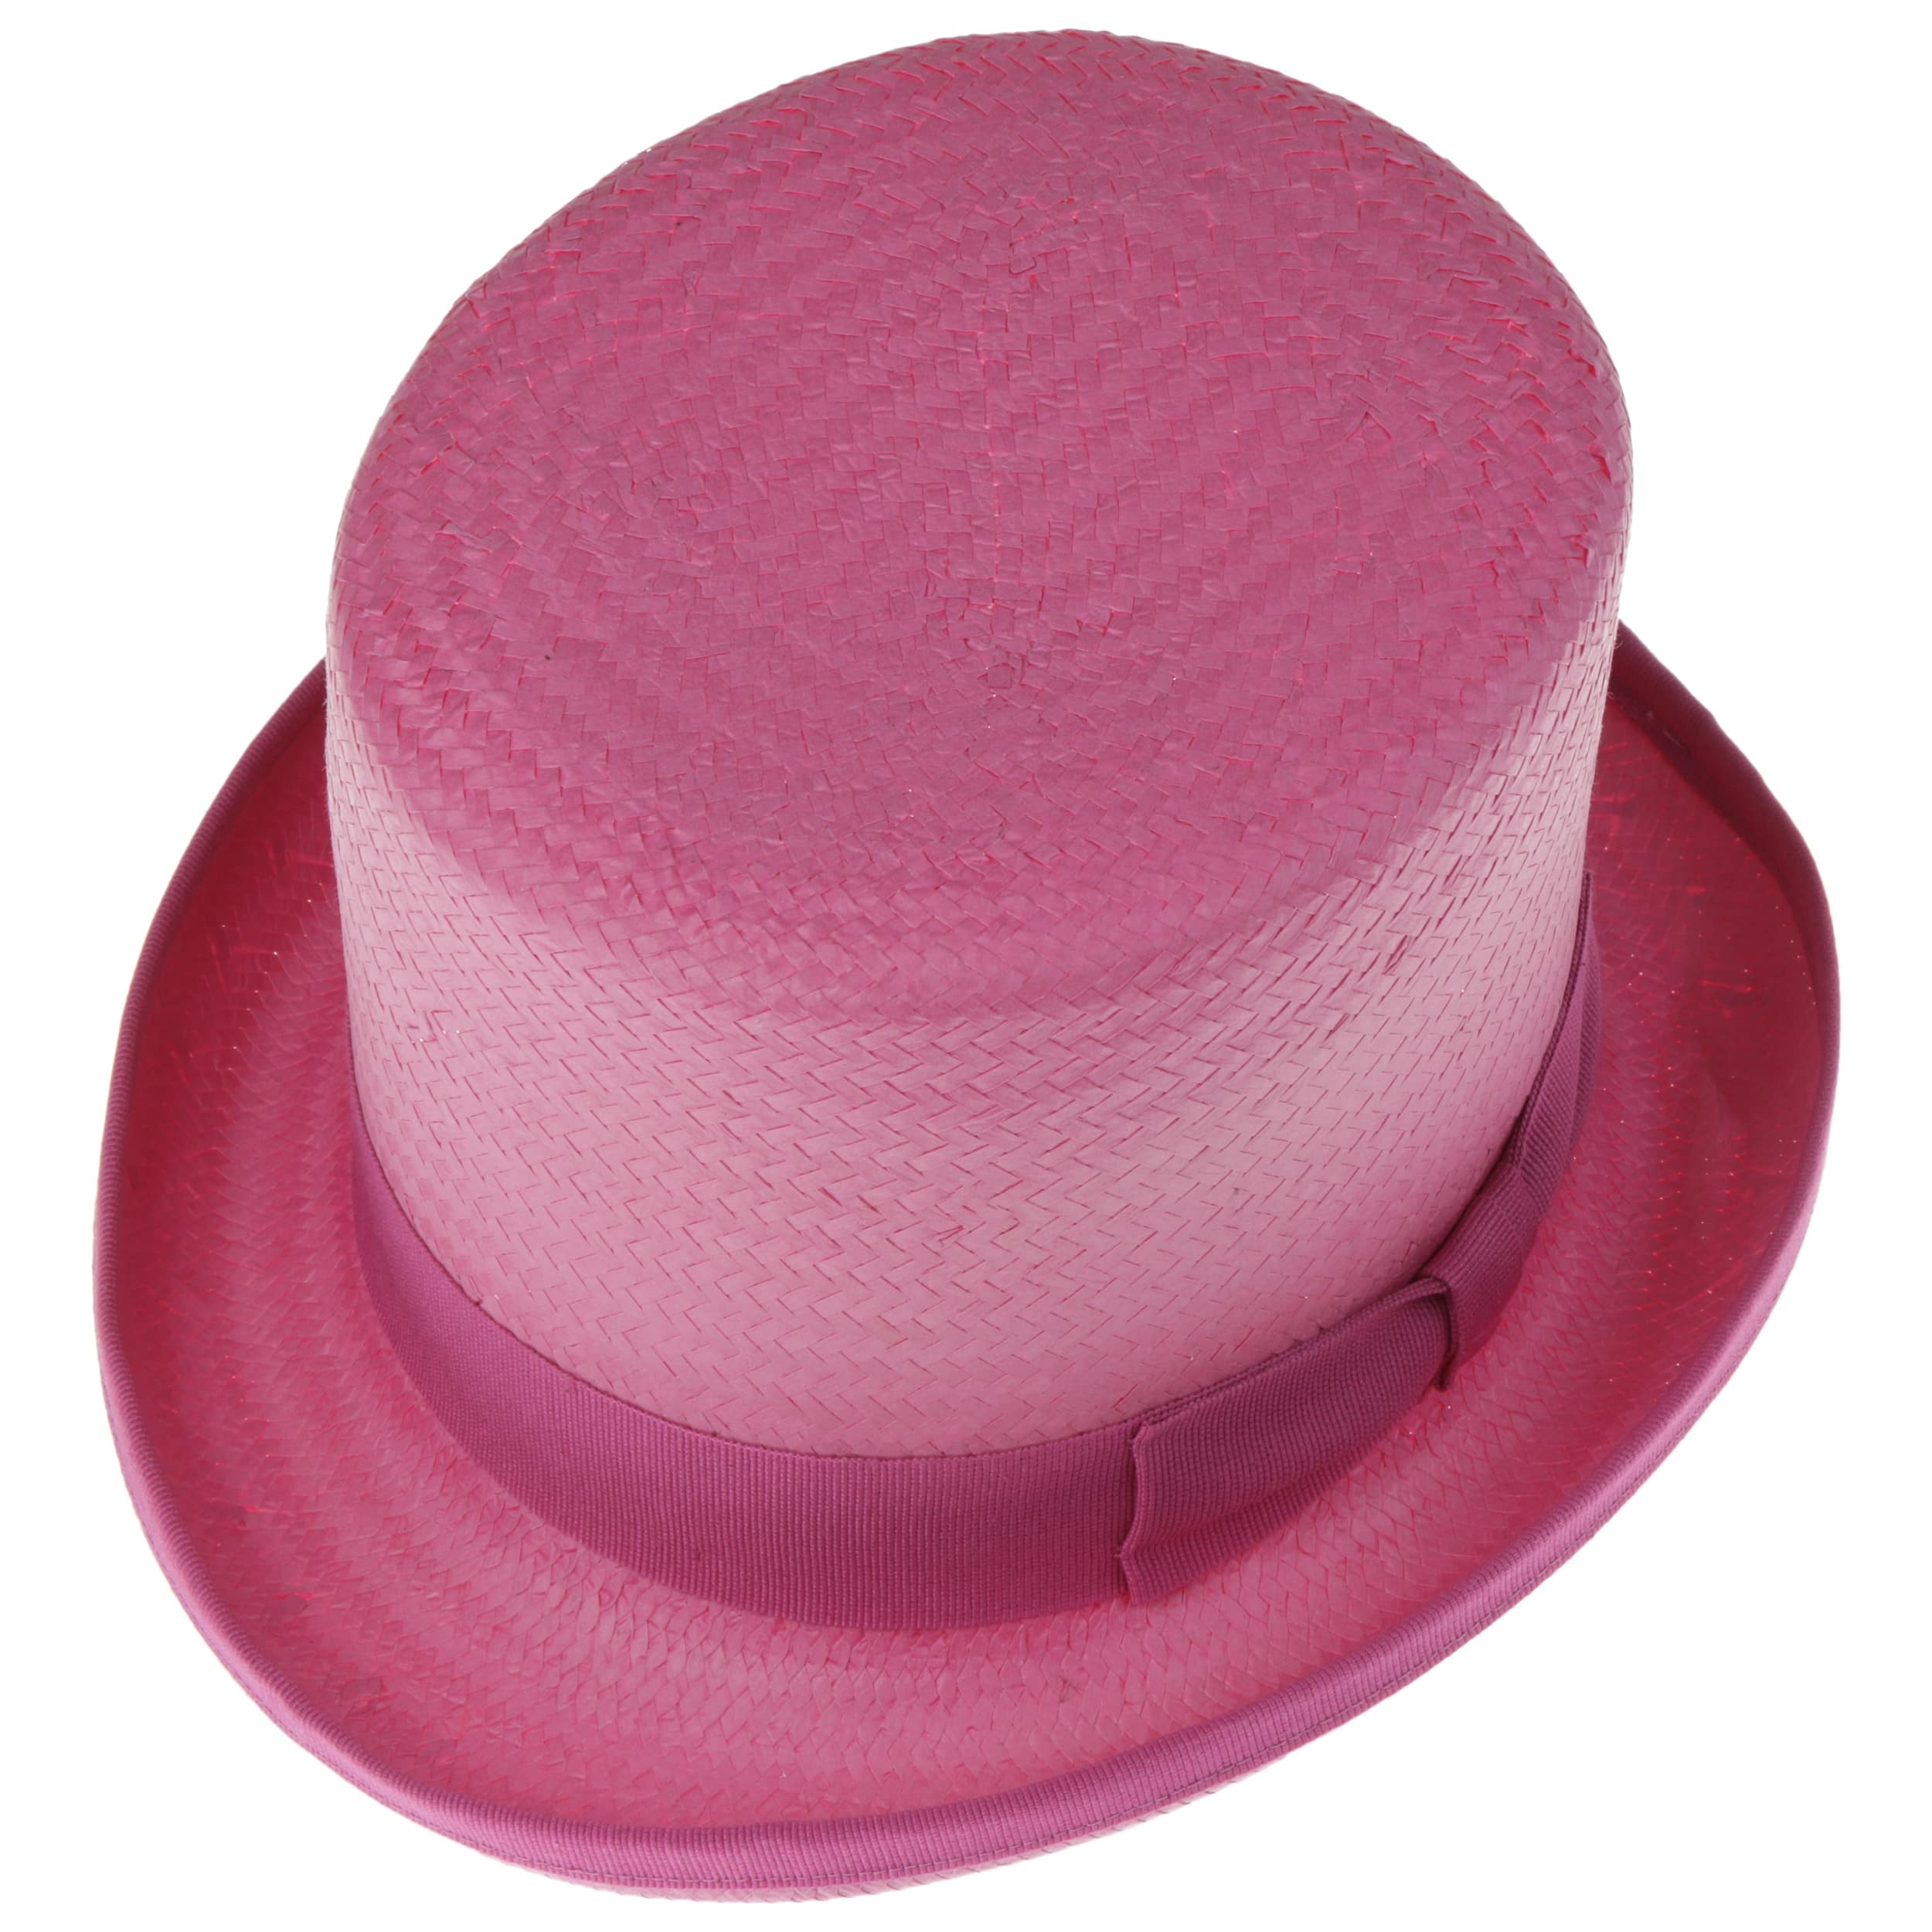 sombrero de maddy Accesorios Sombreros y gorras Sombreros de vestir Sombreros de copa Sombrero de copa topper de paja sombrero de paja 50% de descuento en la venta sombrero de copa asimétrico sombrero de mujer sombrero de dama 